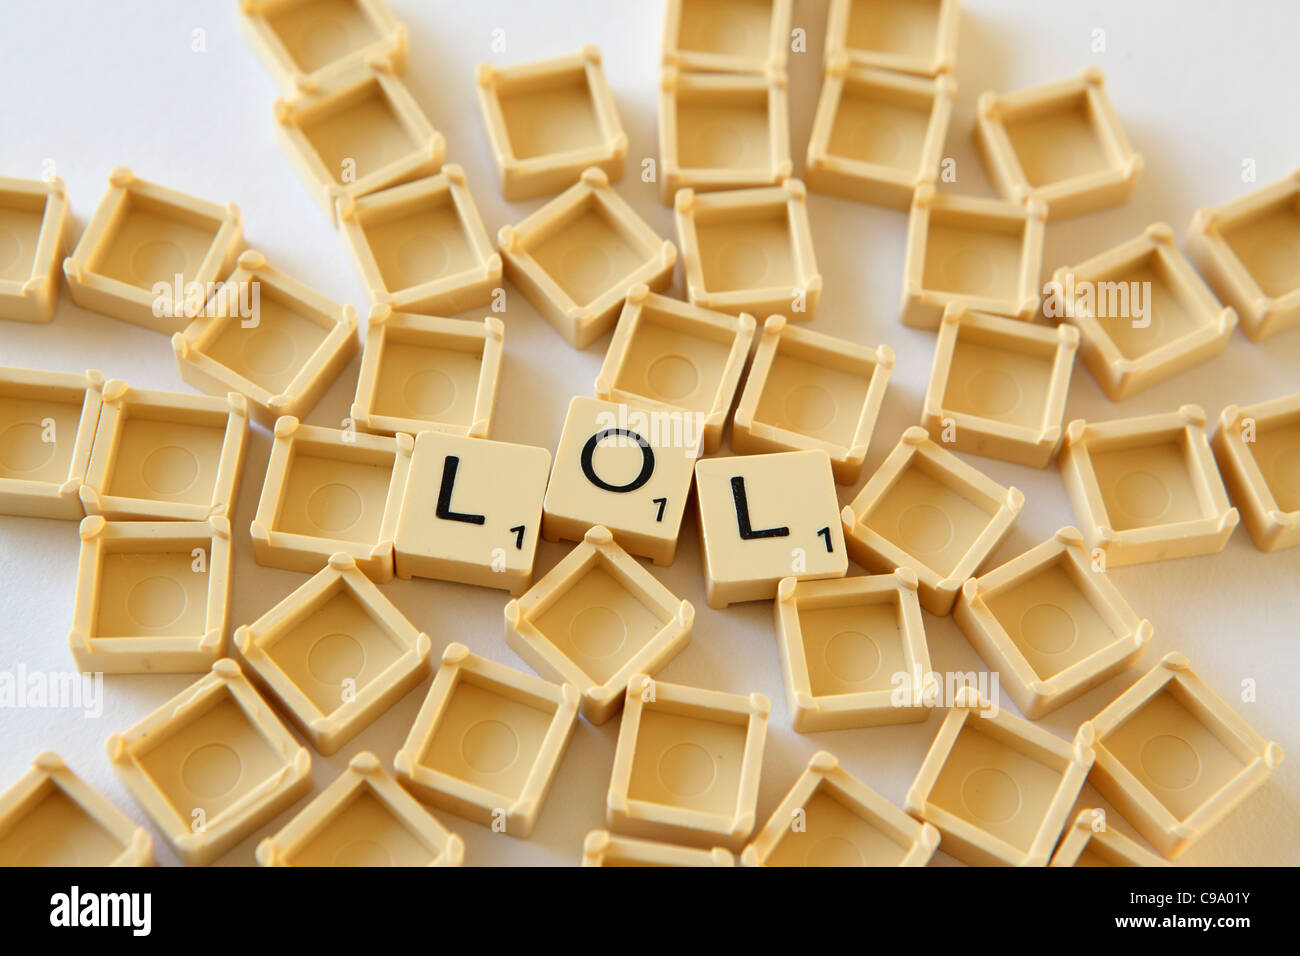 Piastrelle Scrabble / piazze compitare 'LOL' , sfondo bianco studio fotografico Foto Stock